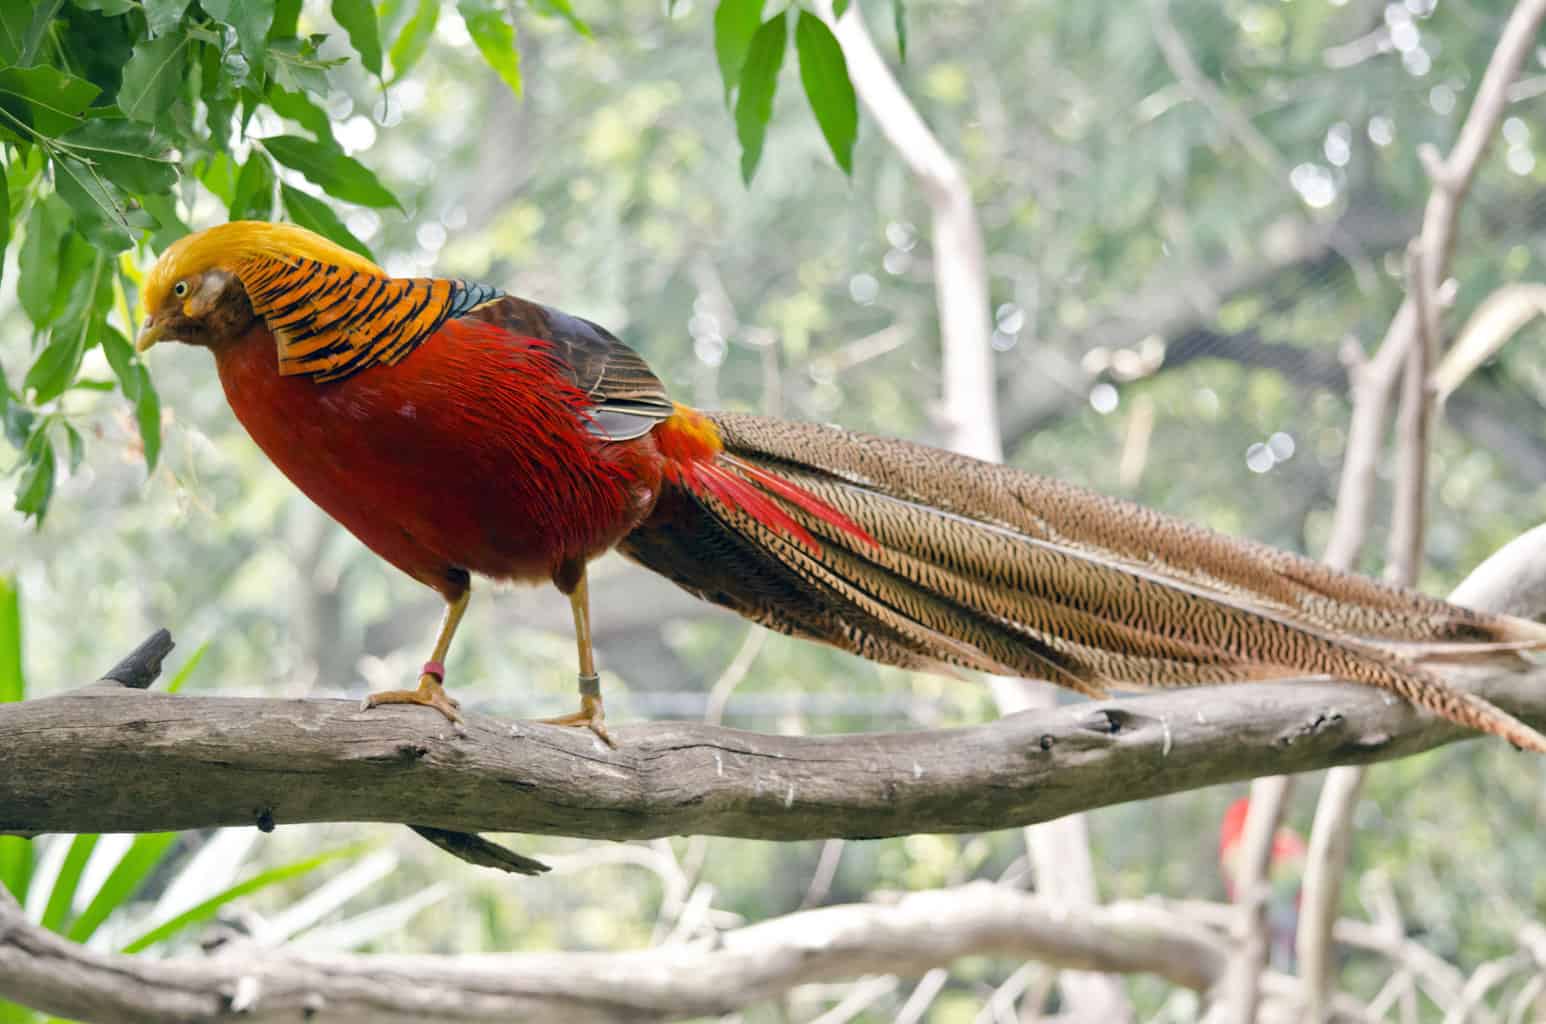 Las aves más extrañas del mundo: nuestra extraña alineación